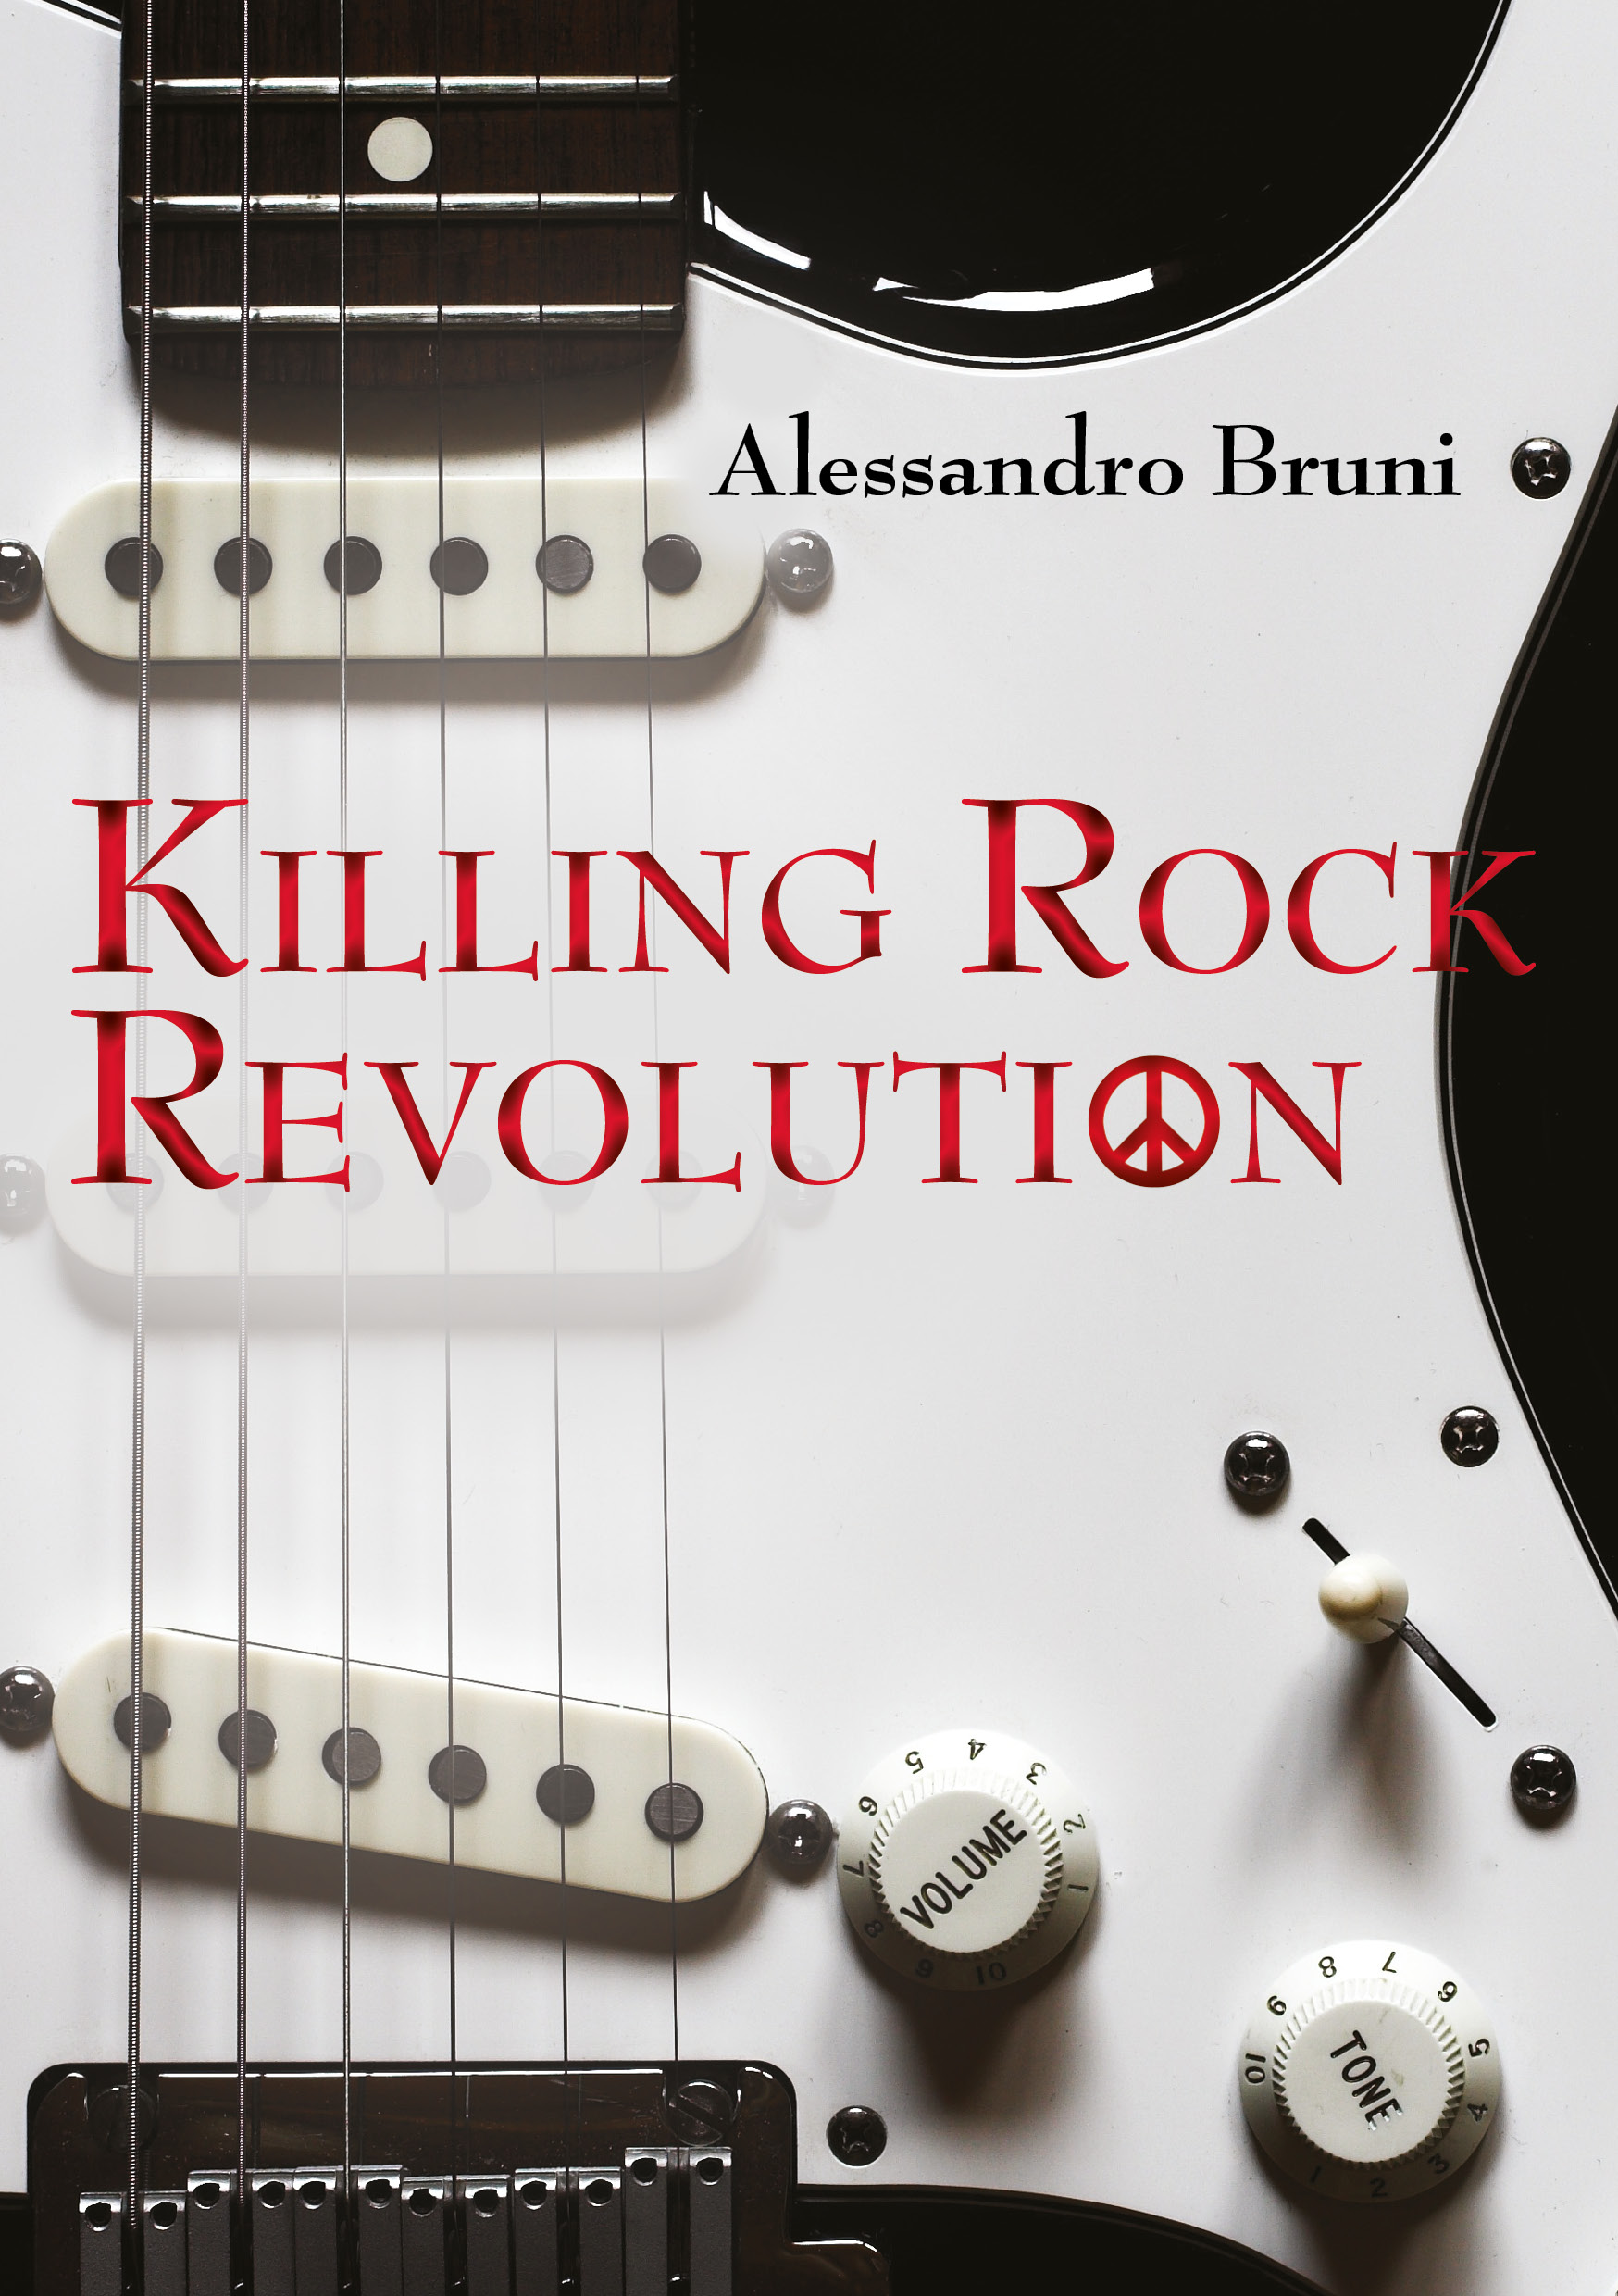 Alessandro Bruni presenta “Killing Rock Revoultion”